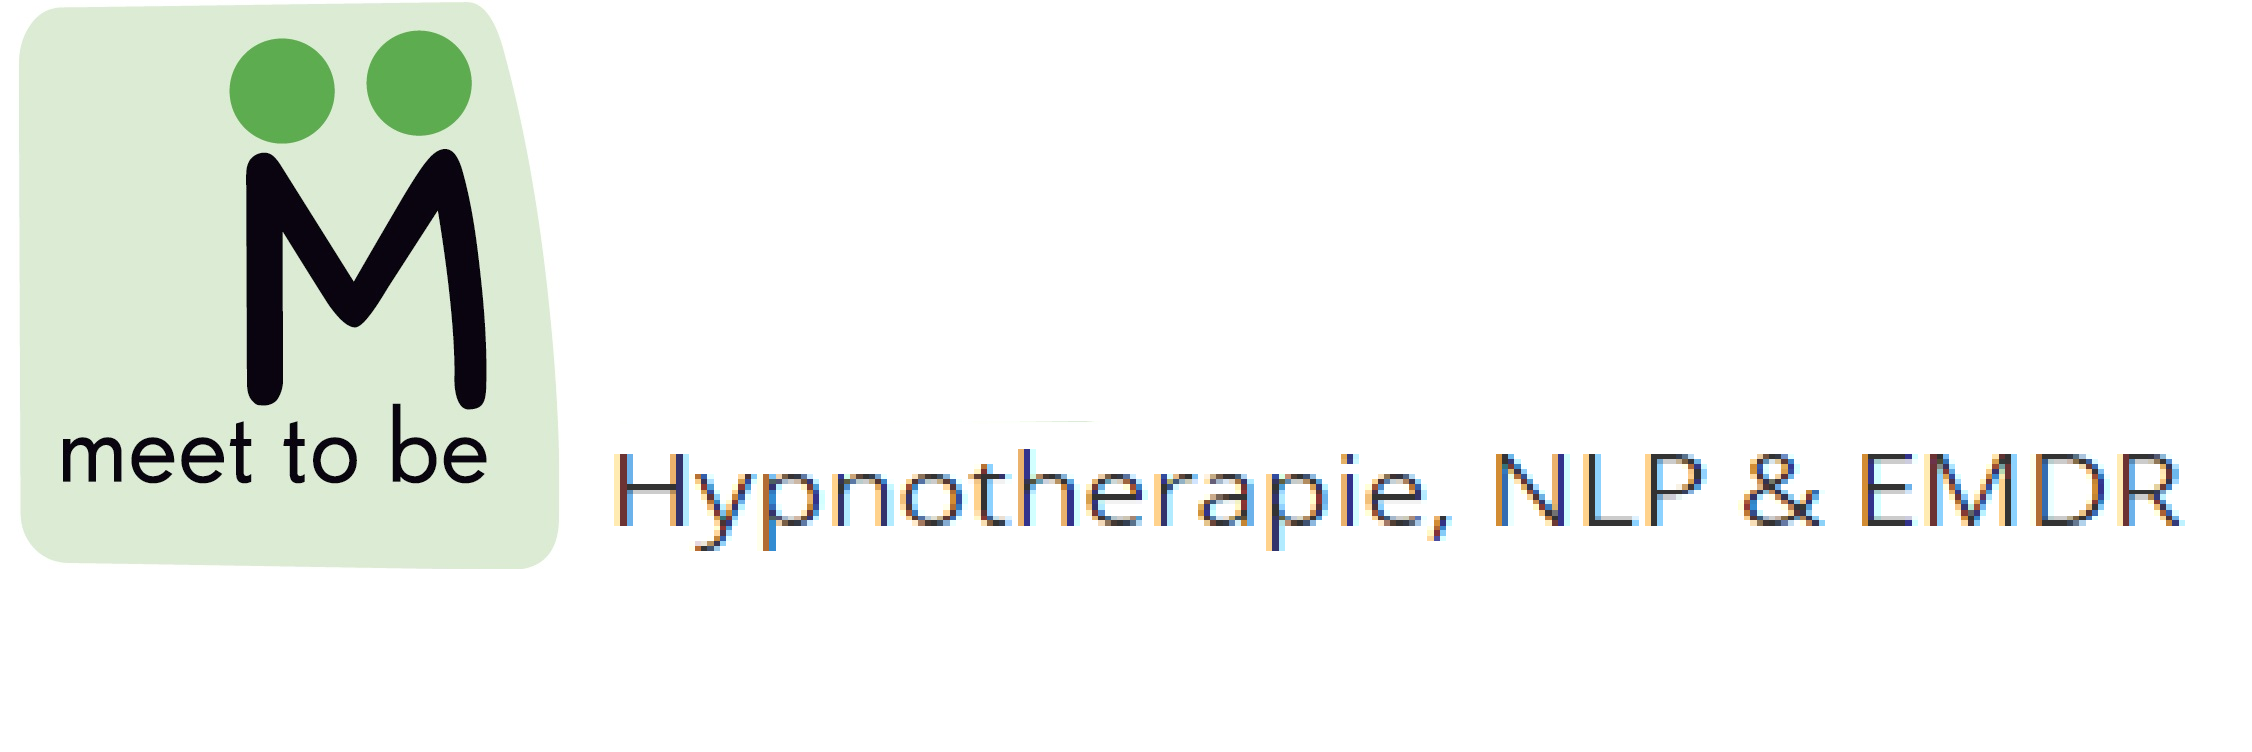 Hypnotherapie, NLP & EMDR